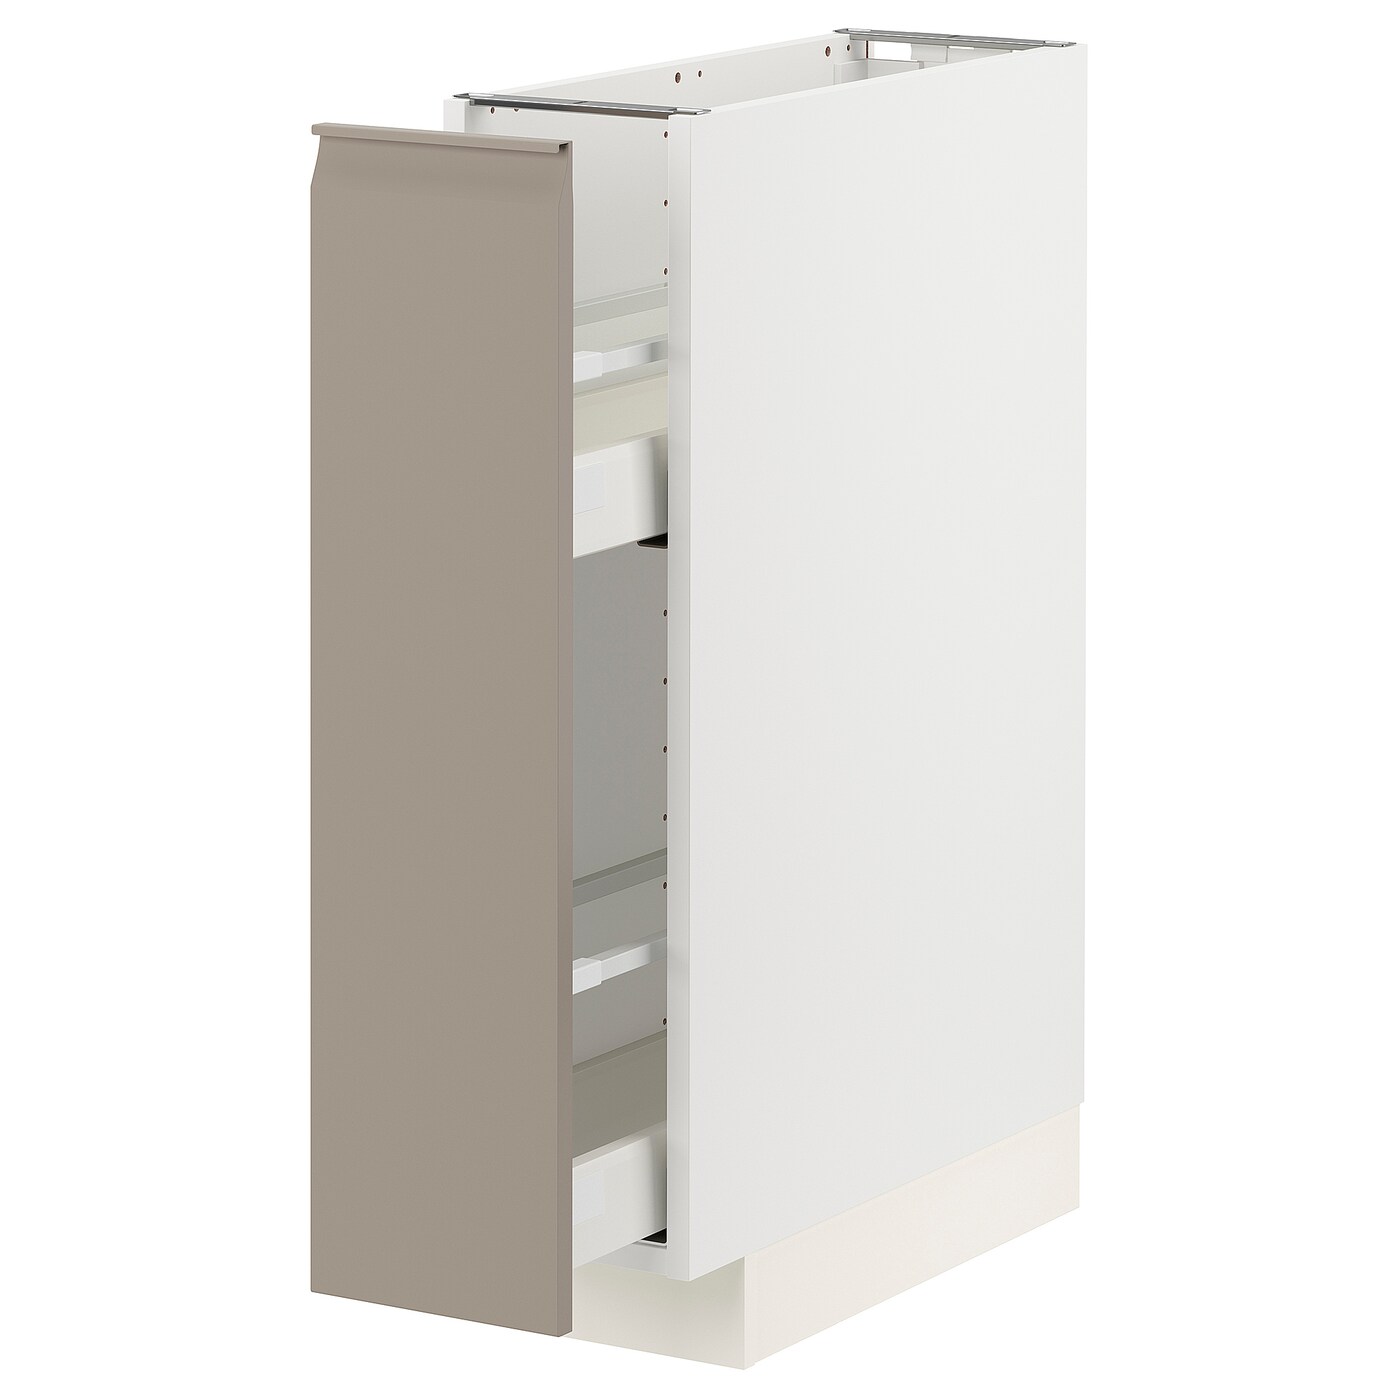 Напольный шкаф - METOD / MAXIMERA IKEA/ МЕТОД/ МАКСИМЕРА ИКЕА,  88х20 см, белый/светло-бежевый